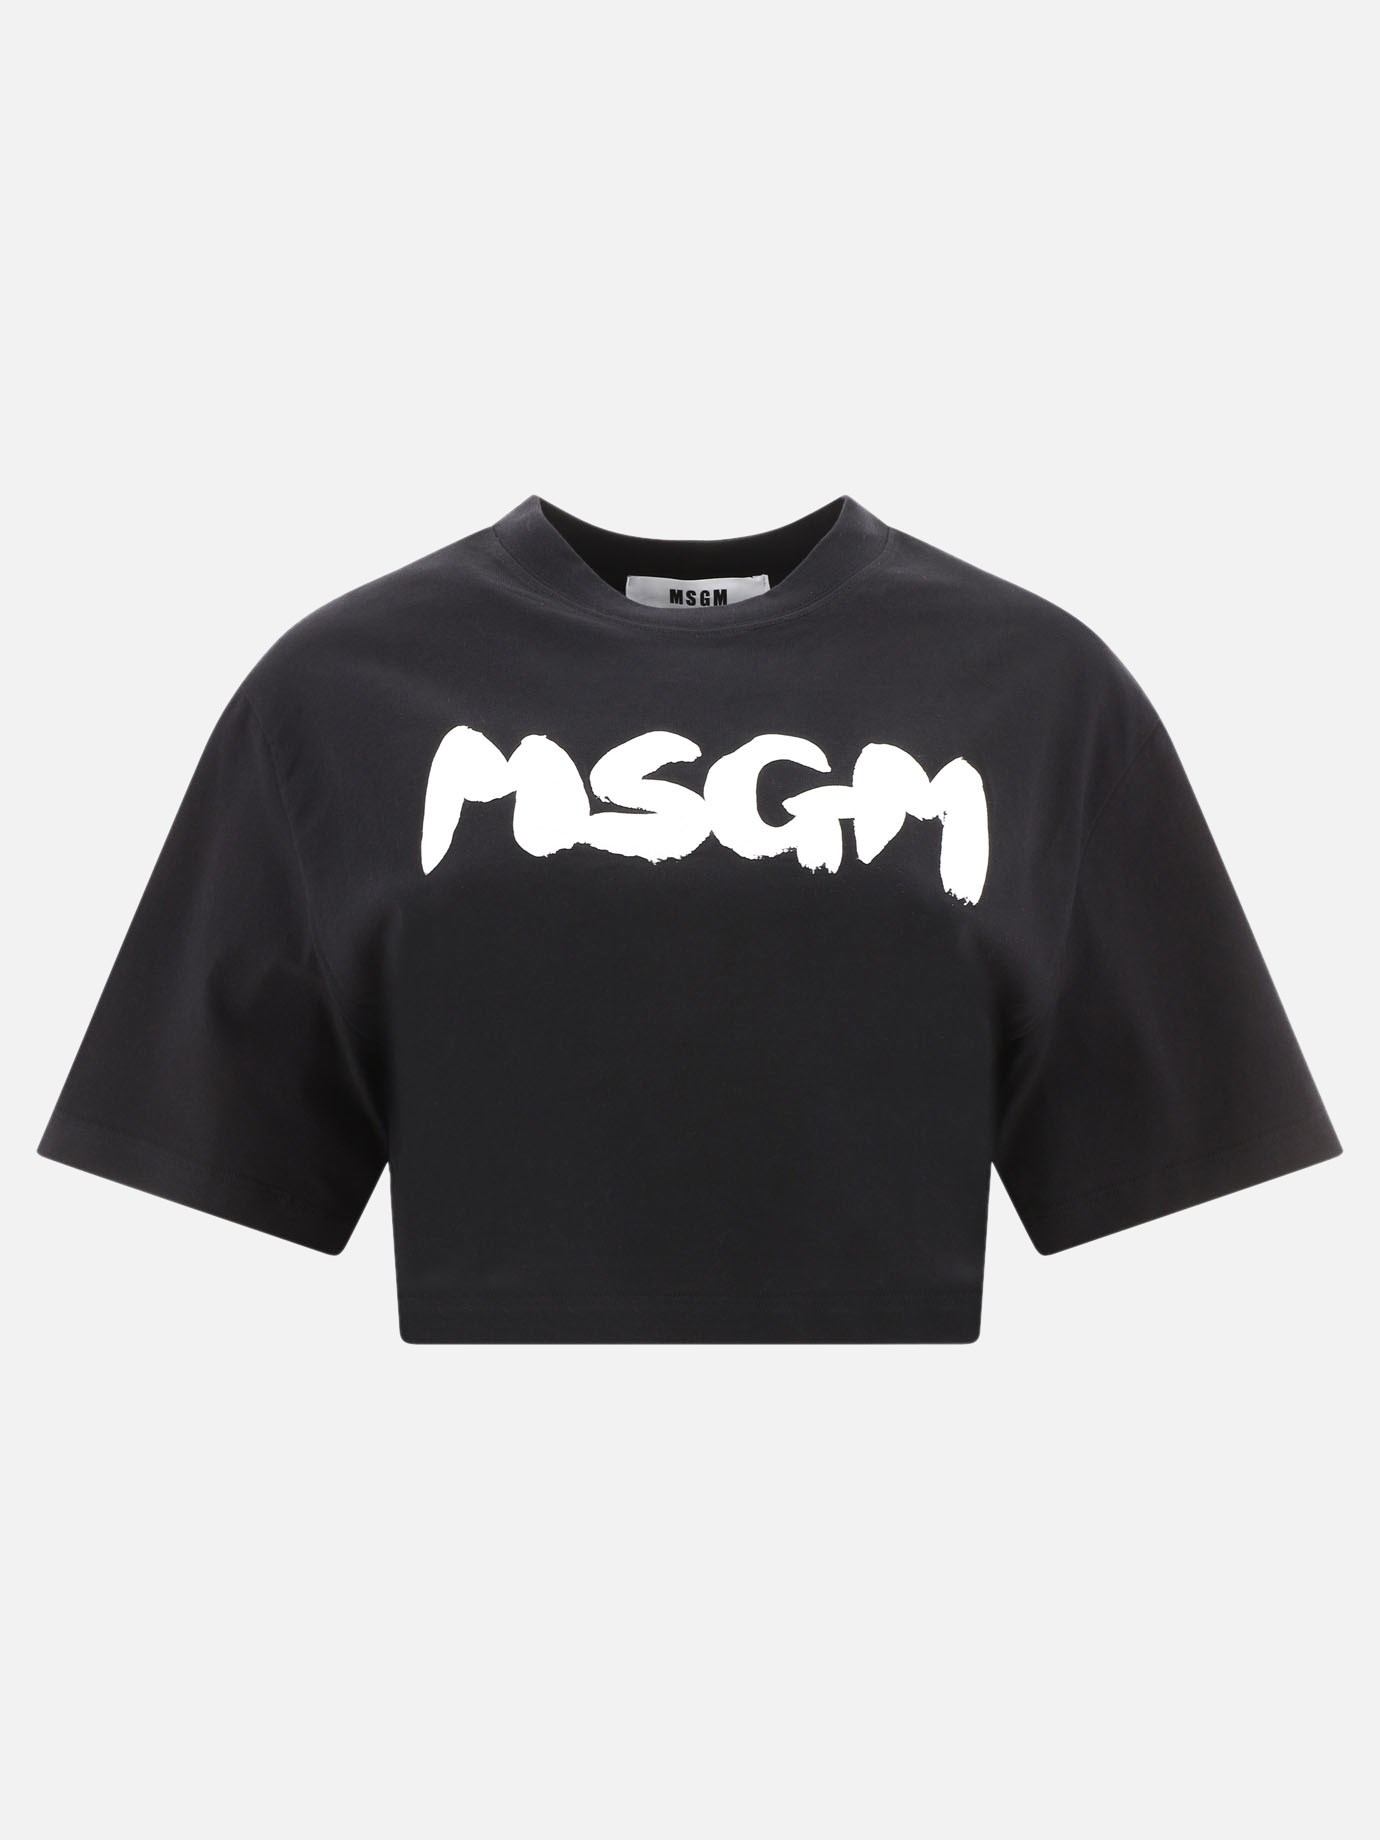  Msgm  cropped t-shirtby Msgm - 4